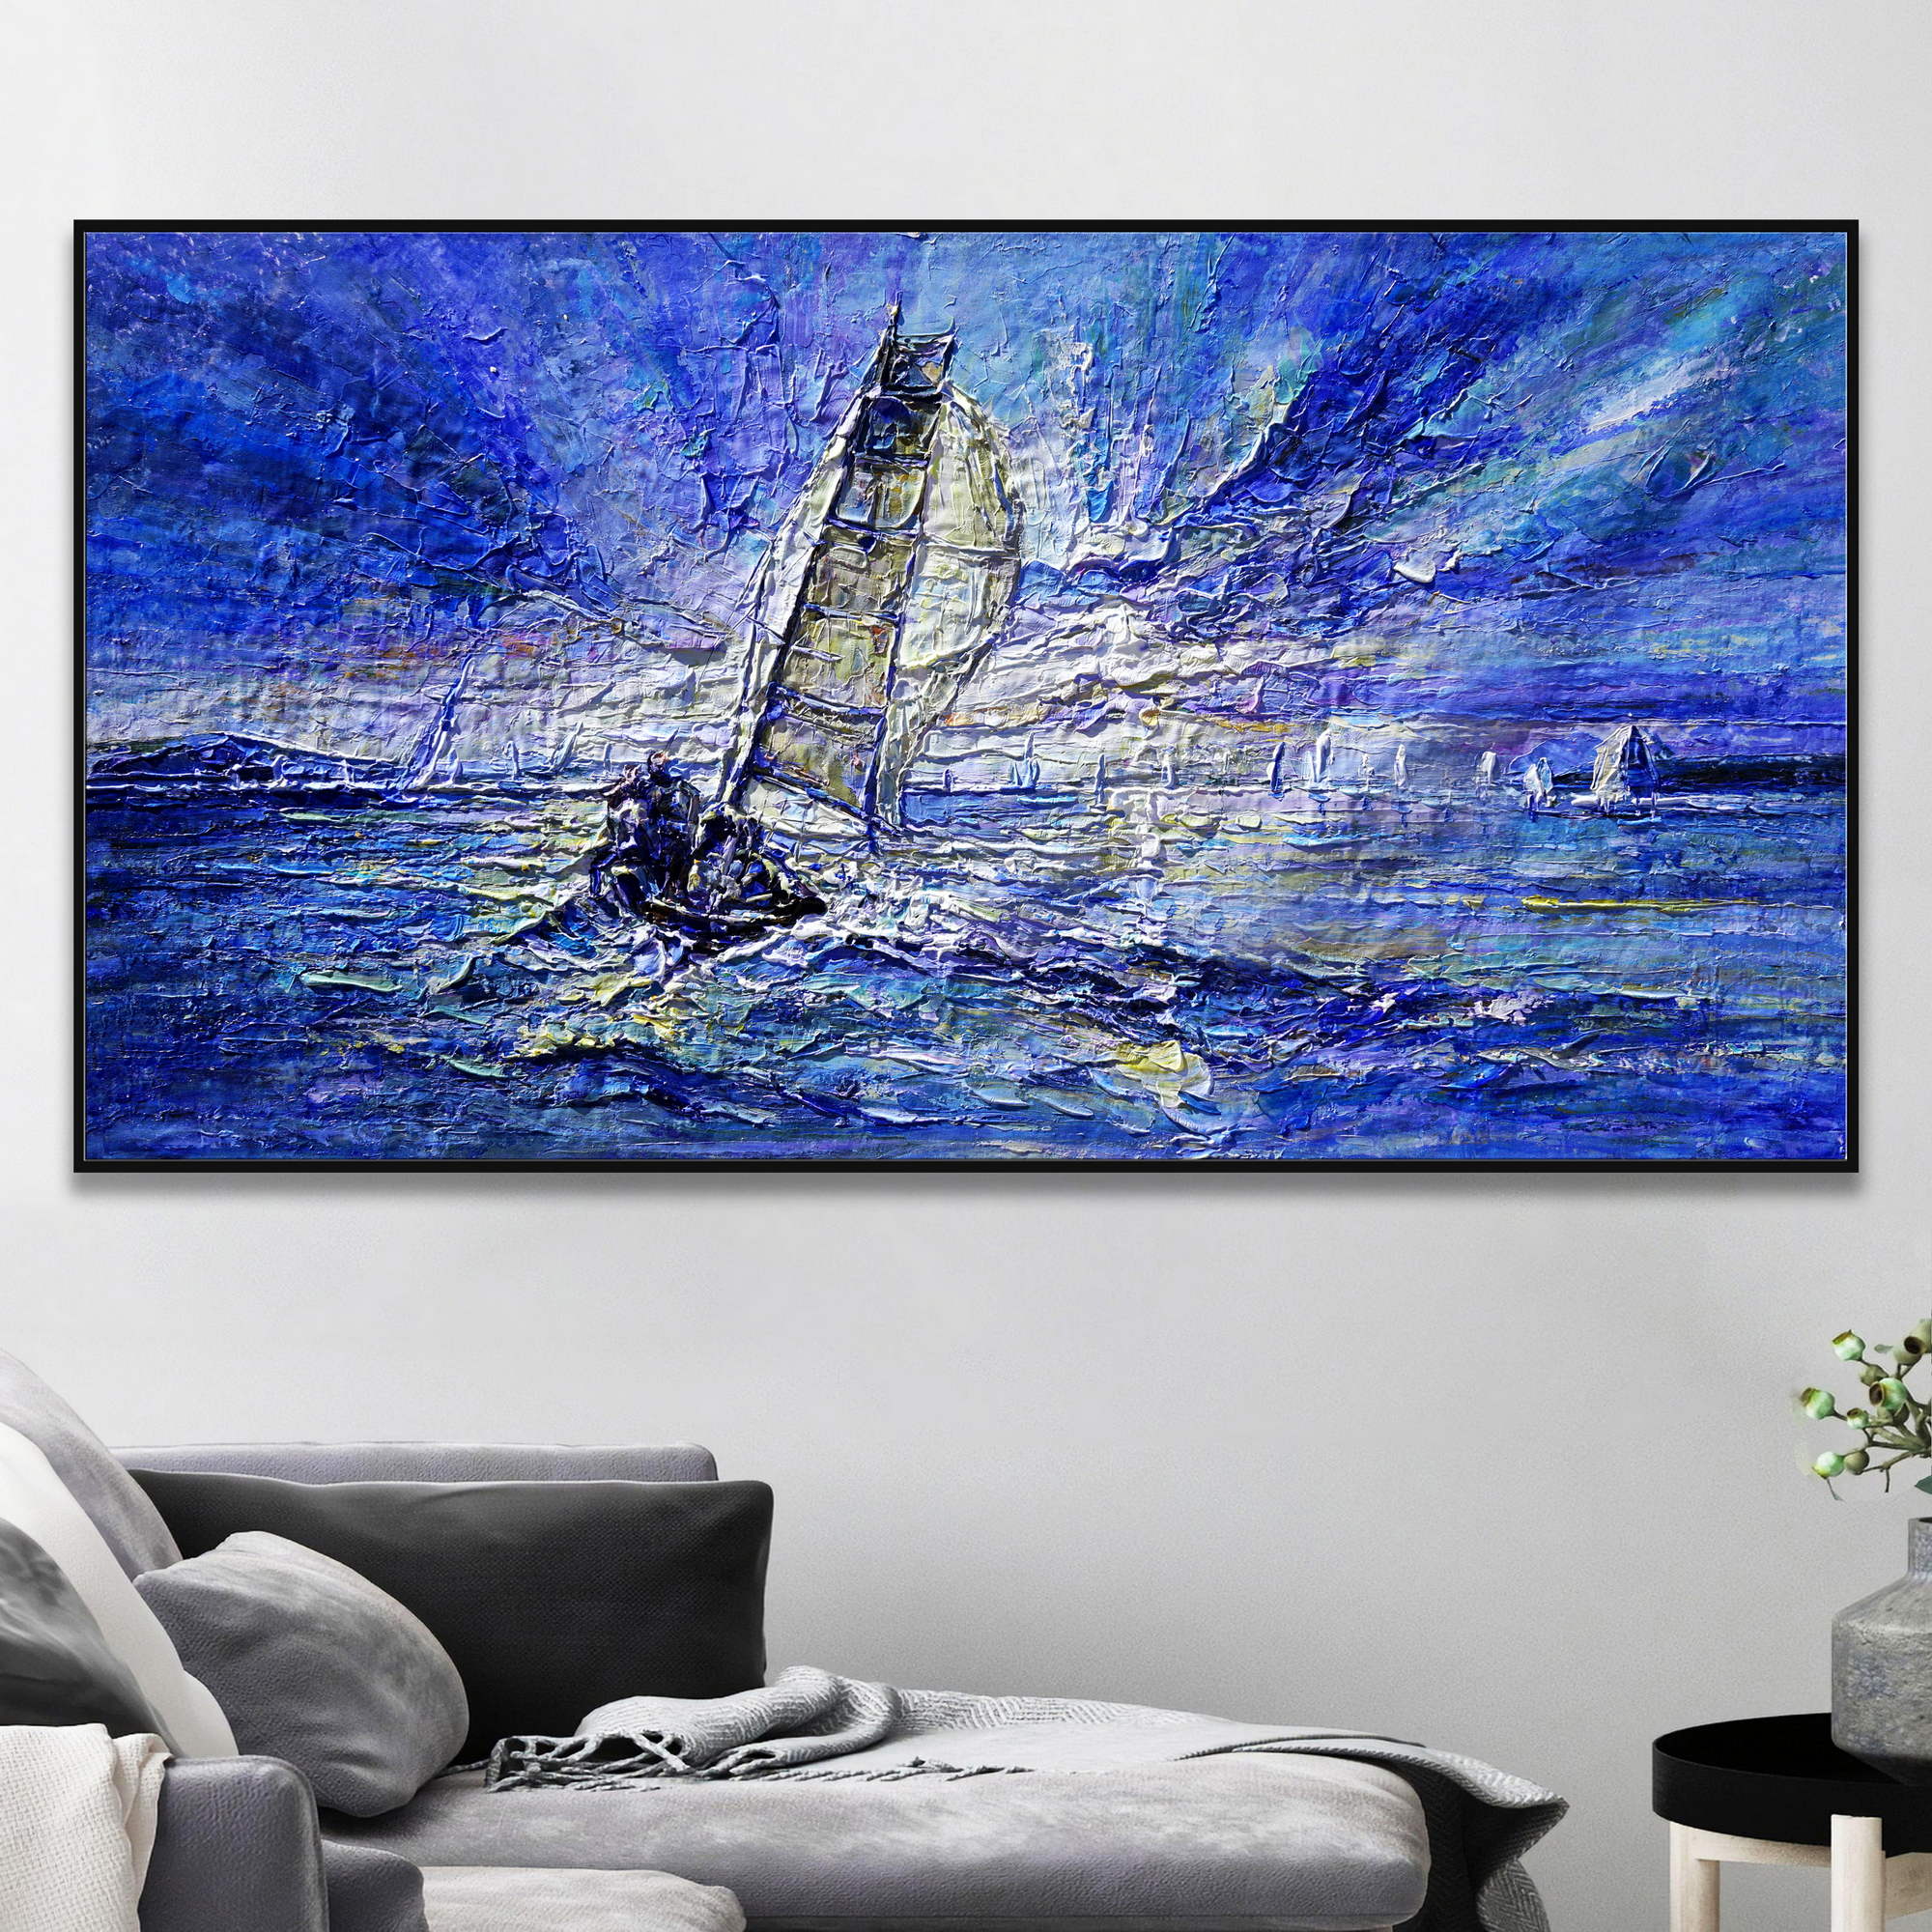 Dipinto di una scena marina con barca a vela e cielo tormentato.